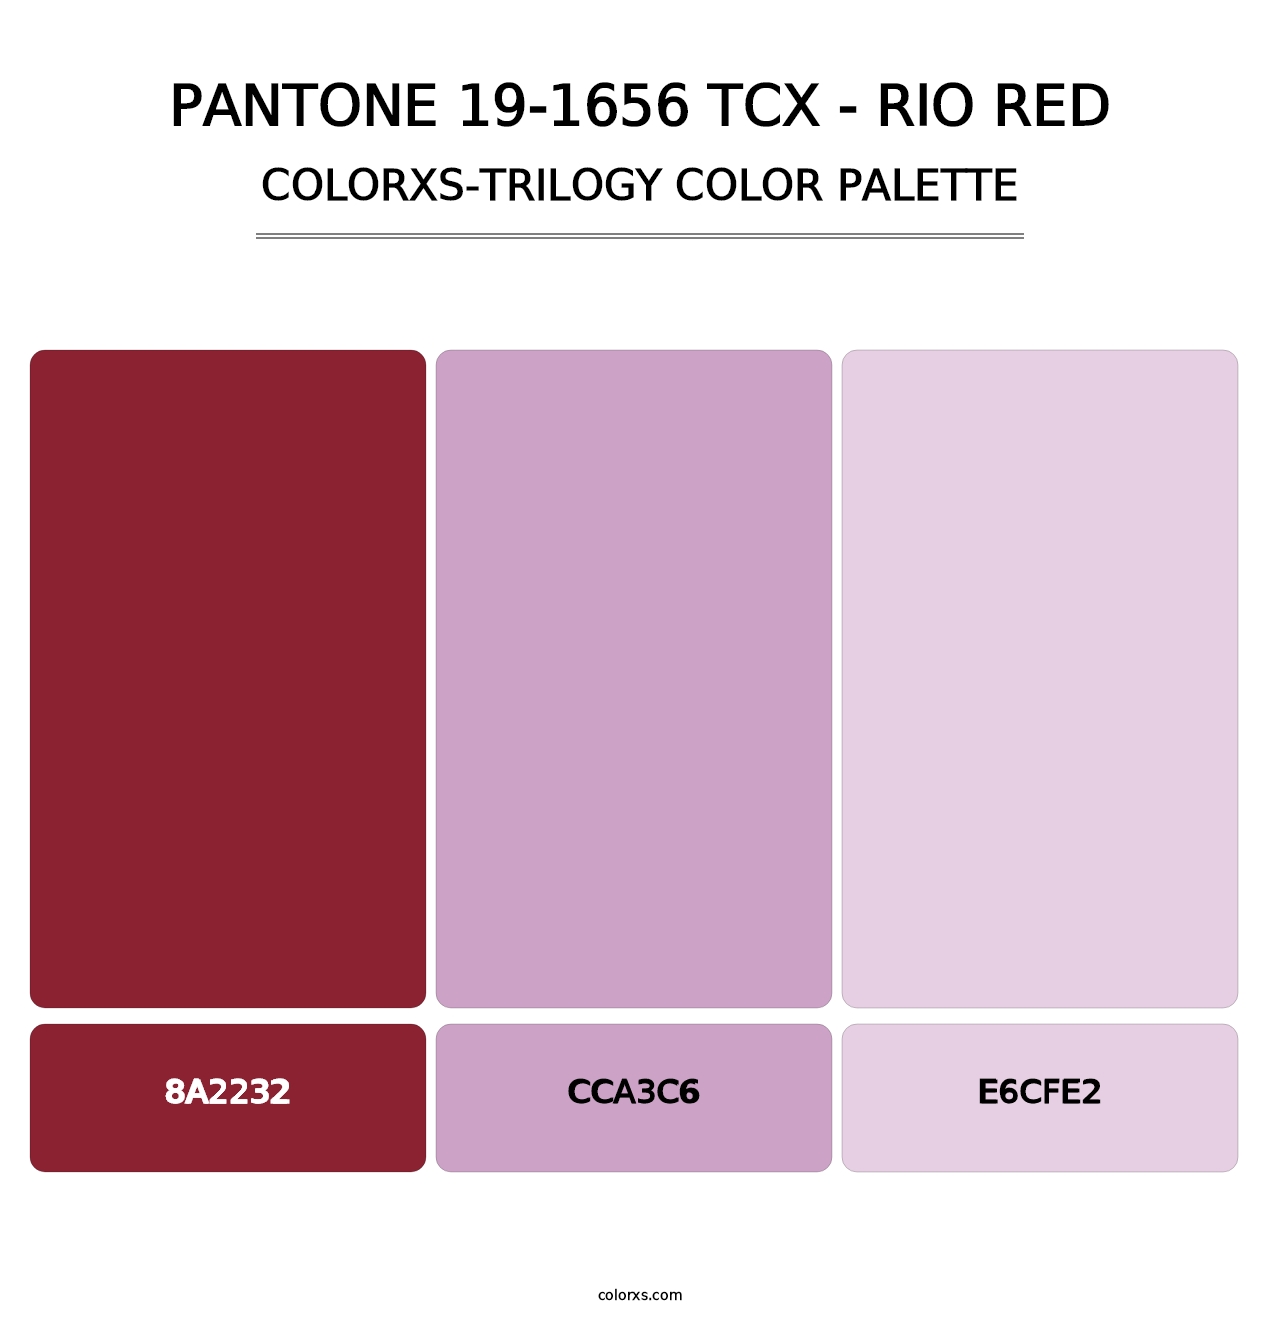 PANTONE 19-1656 TCX - Rio Red - Colorxs Trilogy Palette